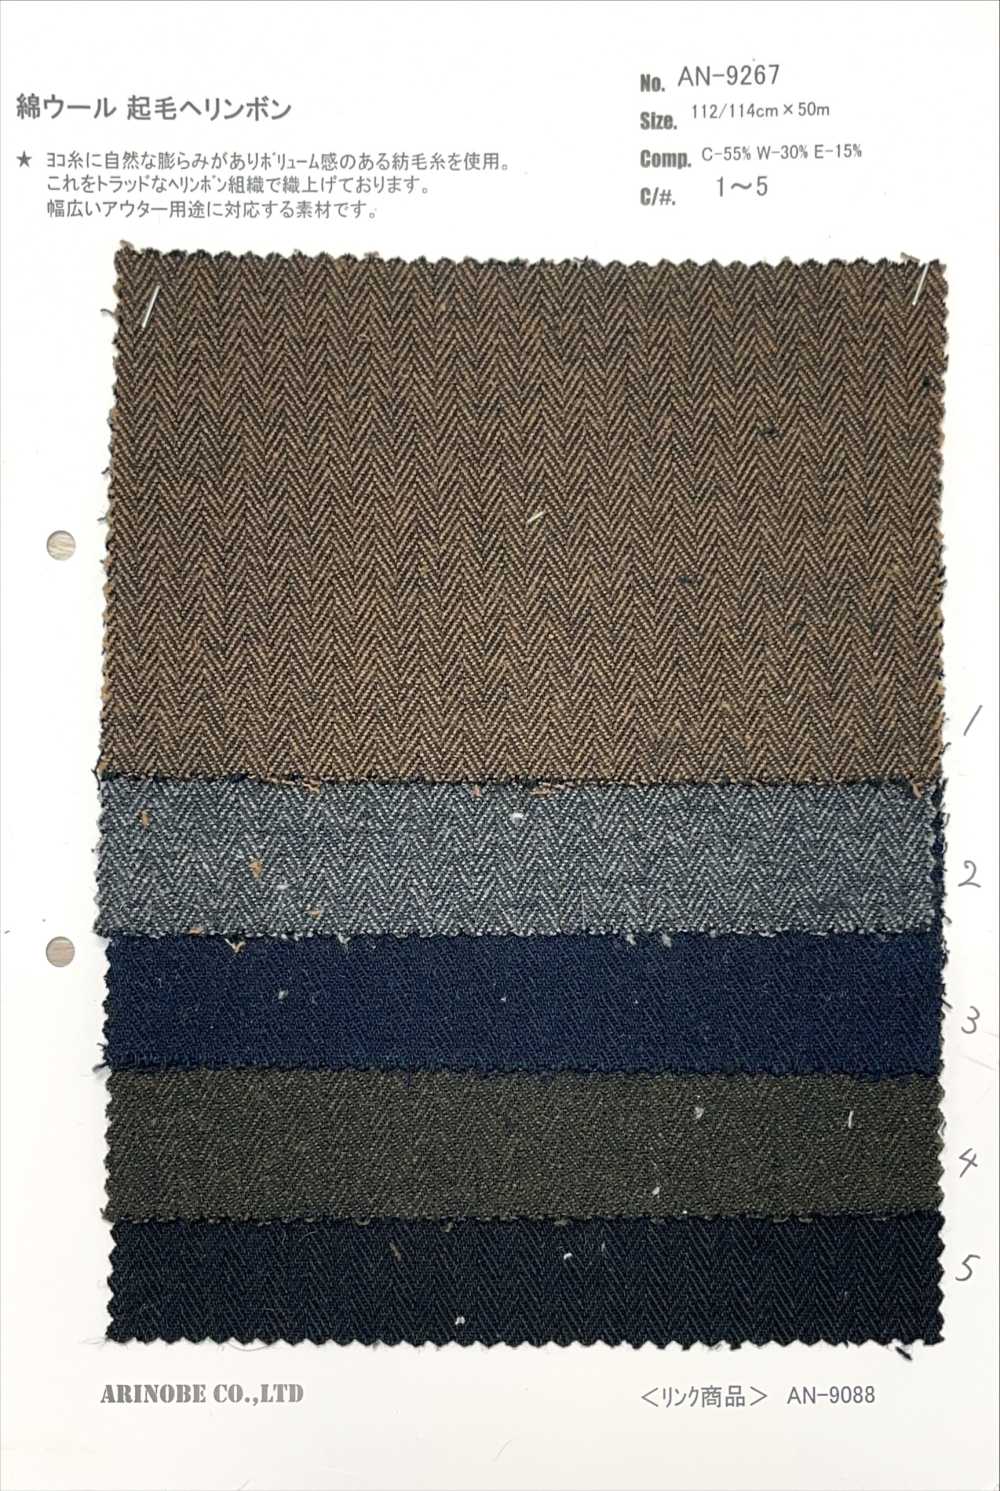 AN-9267 Fuzzy-Fischgrätenmuster Aus Baumwolle[Textilgewebe] ARINOBE CO., LTD.